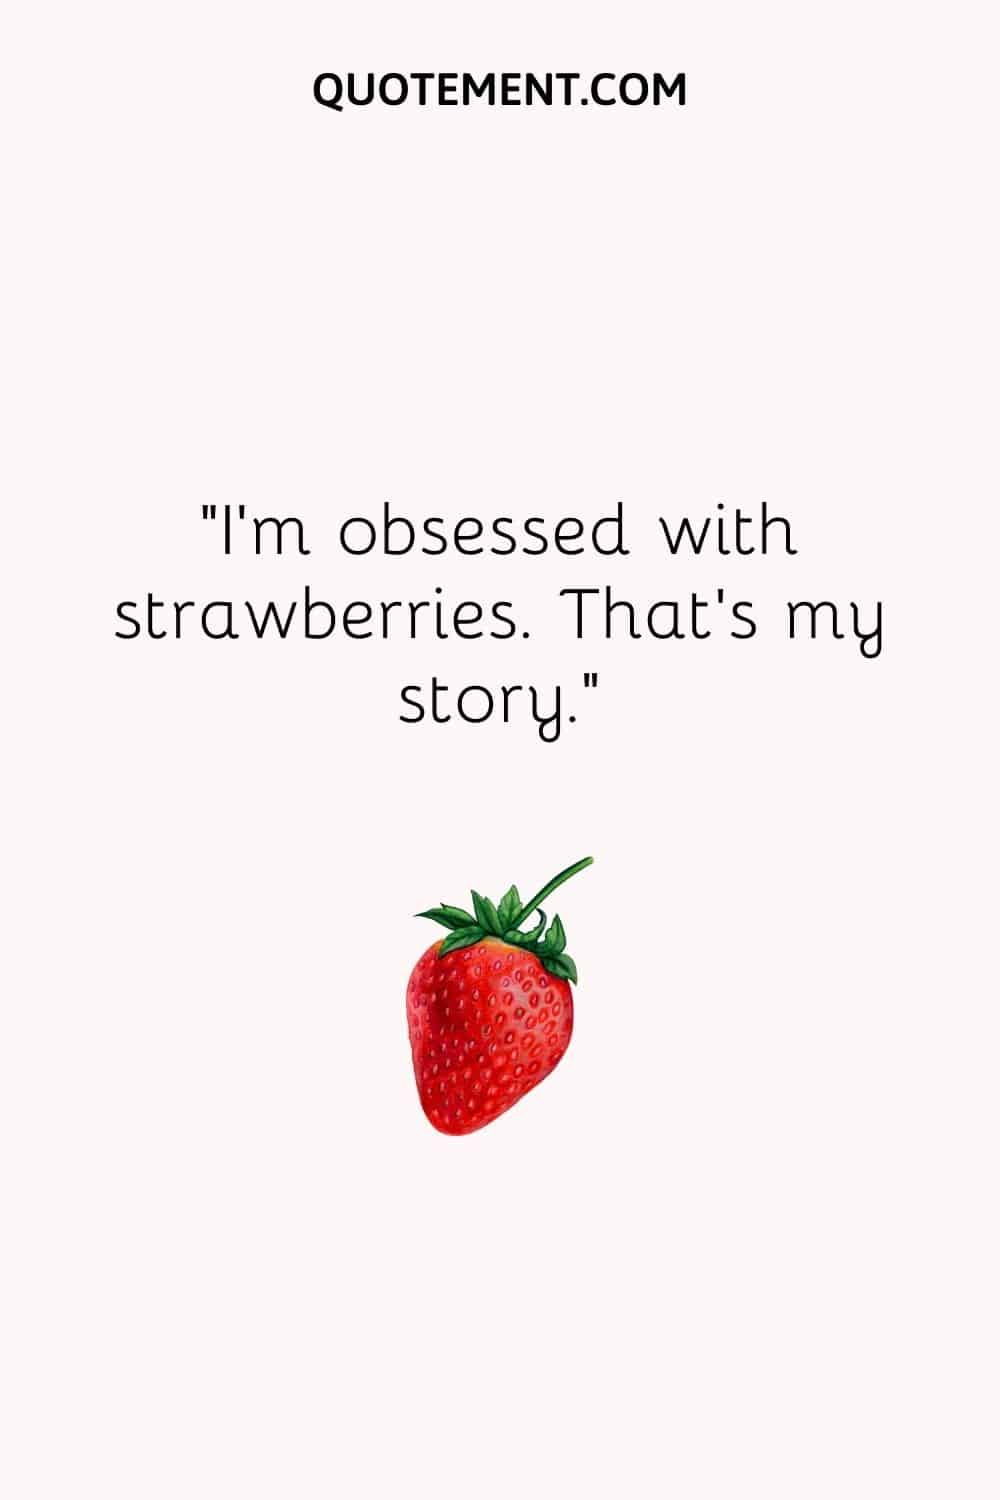 Estoy obsesionada con las fresas. Esa es mi historia